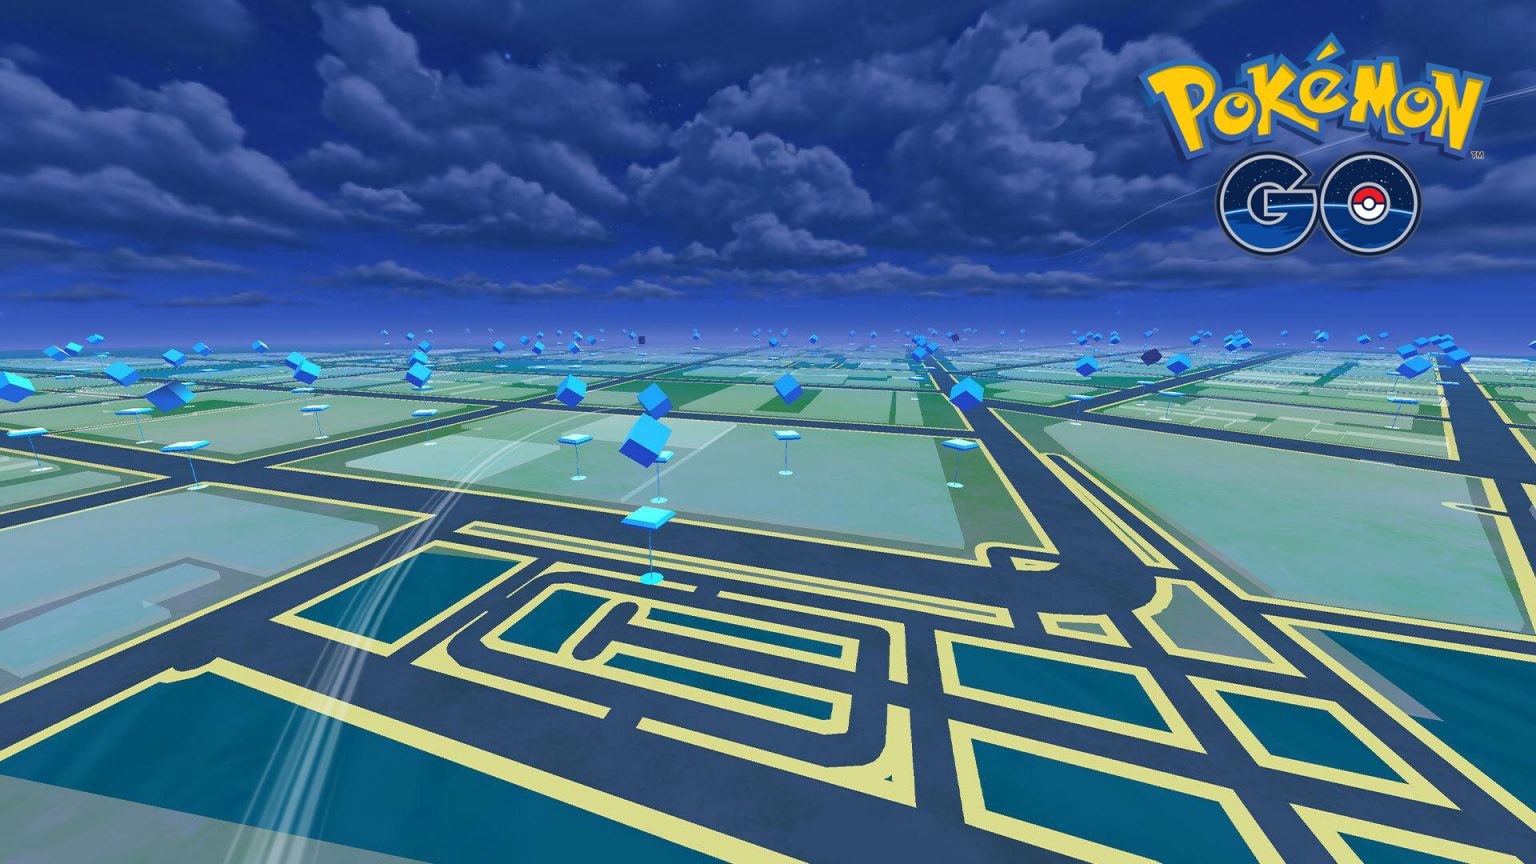 Pokémon Go night landscape Virtual Backgrounds